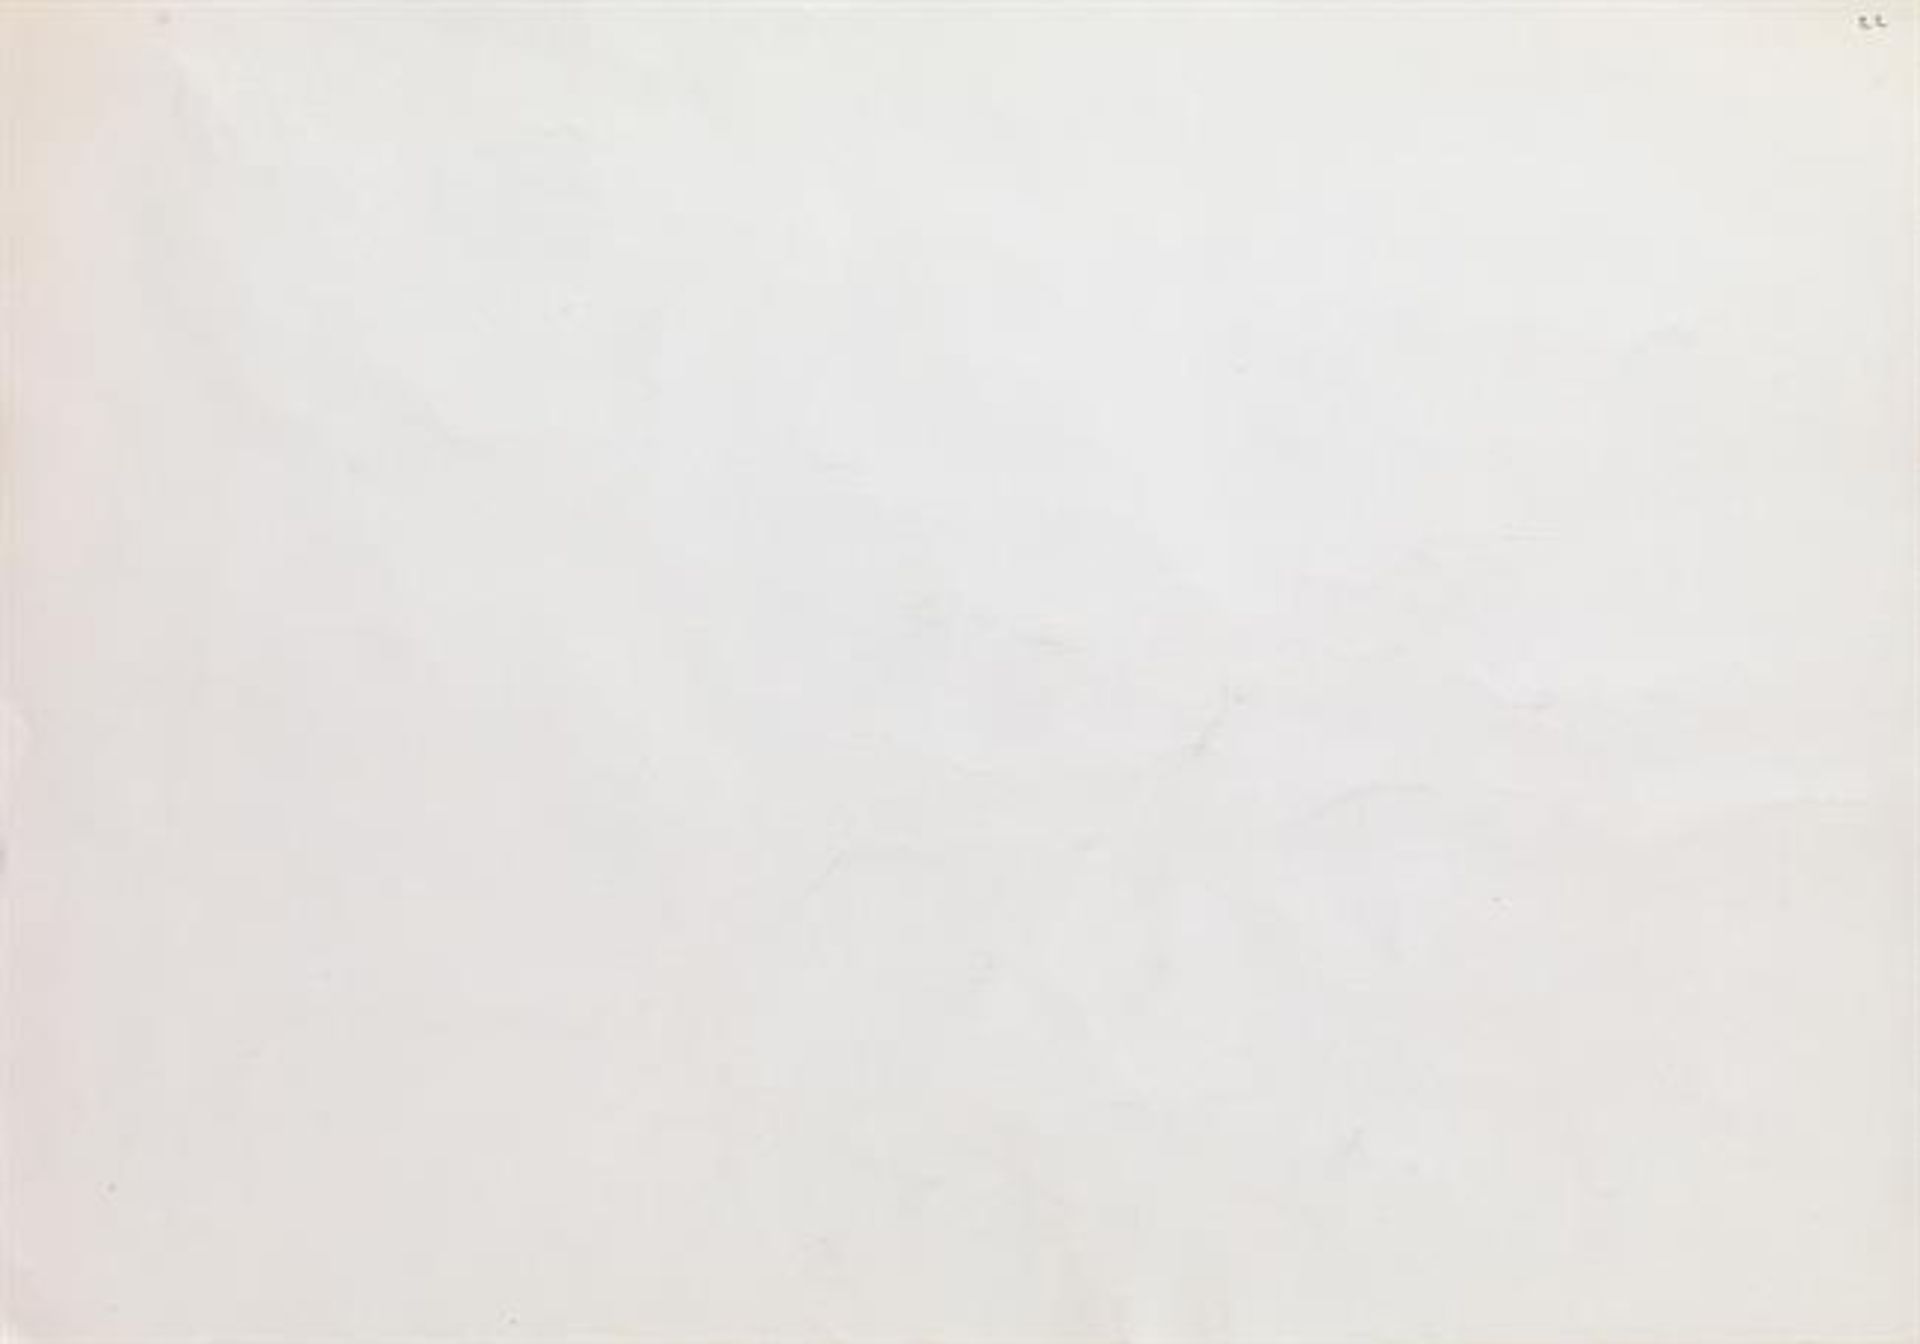 Maria Lassnig: "Die Unterscheidung der verschiedenen Sinneswahrnehmungen" - Image 2 of 2